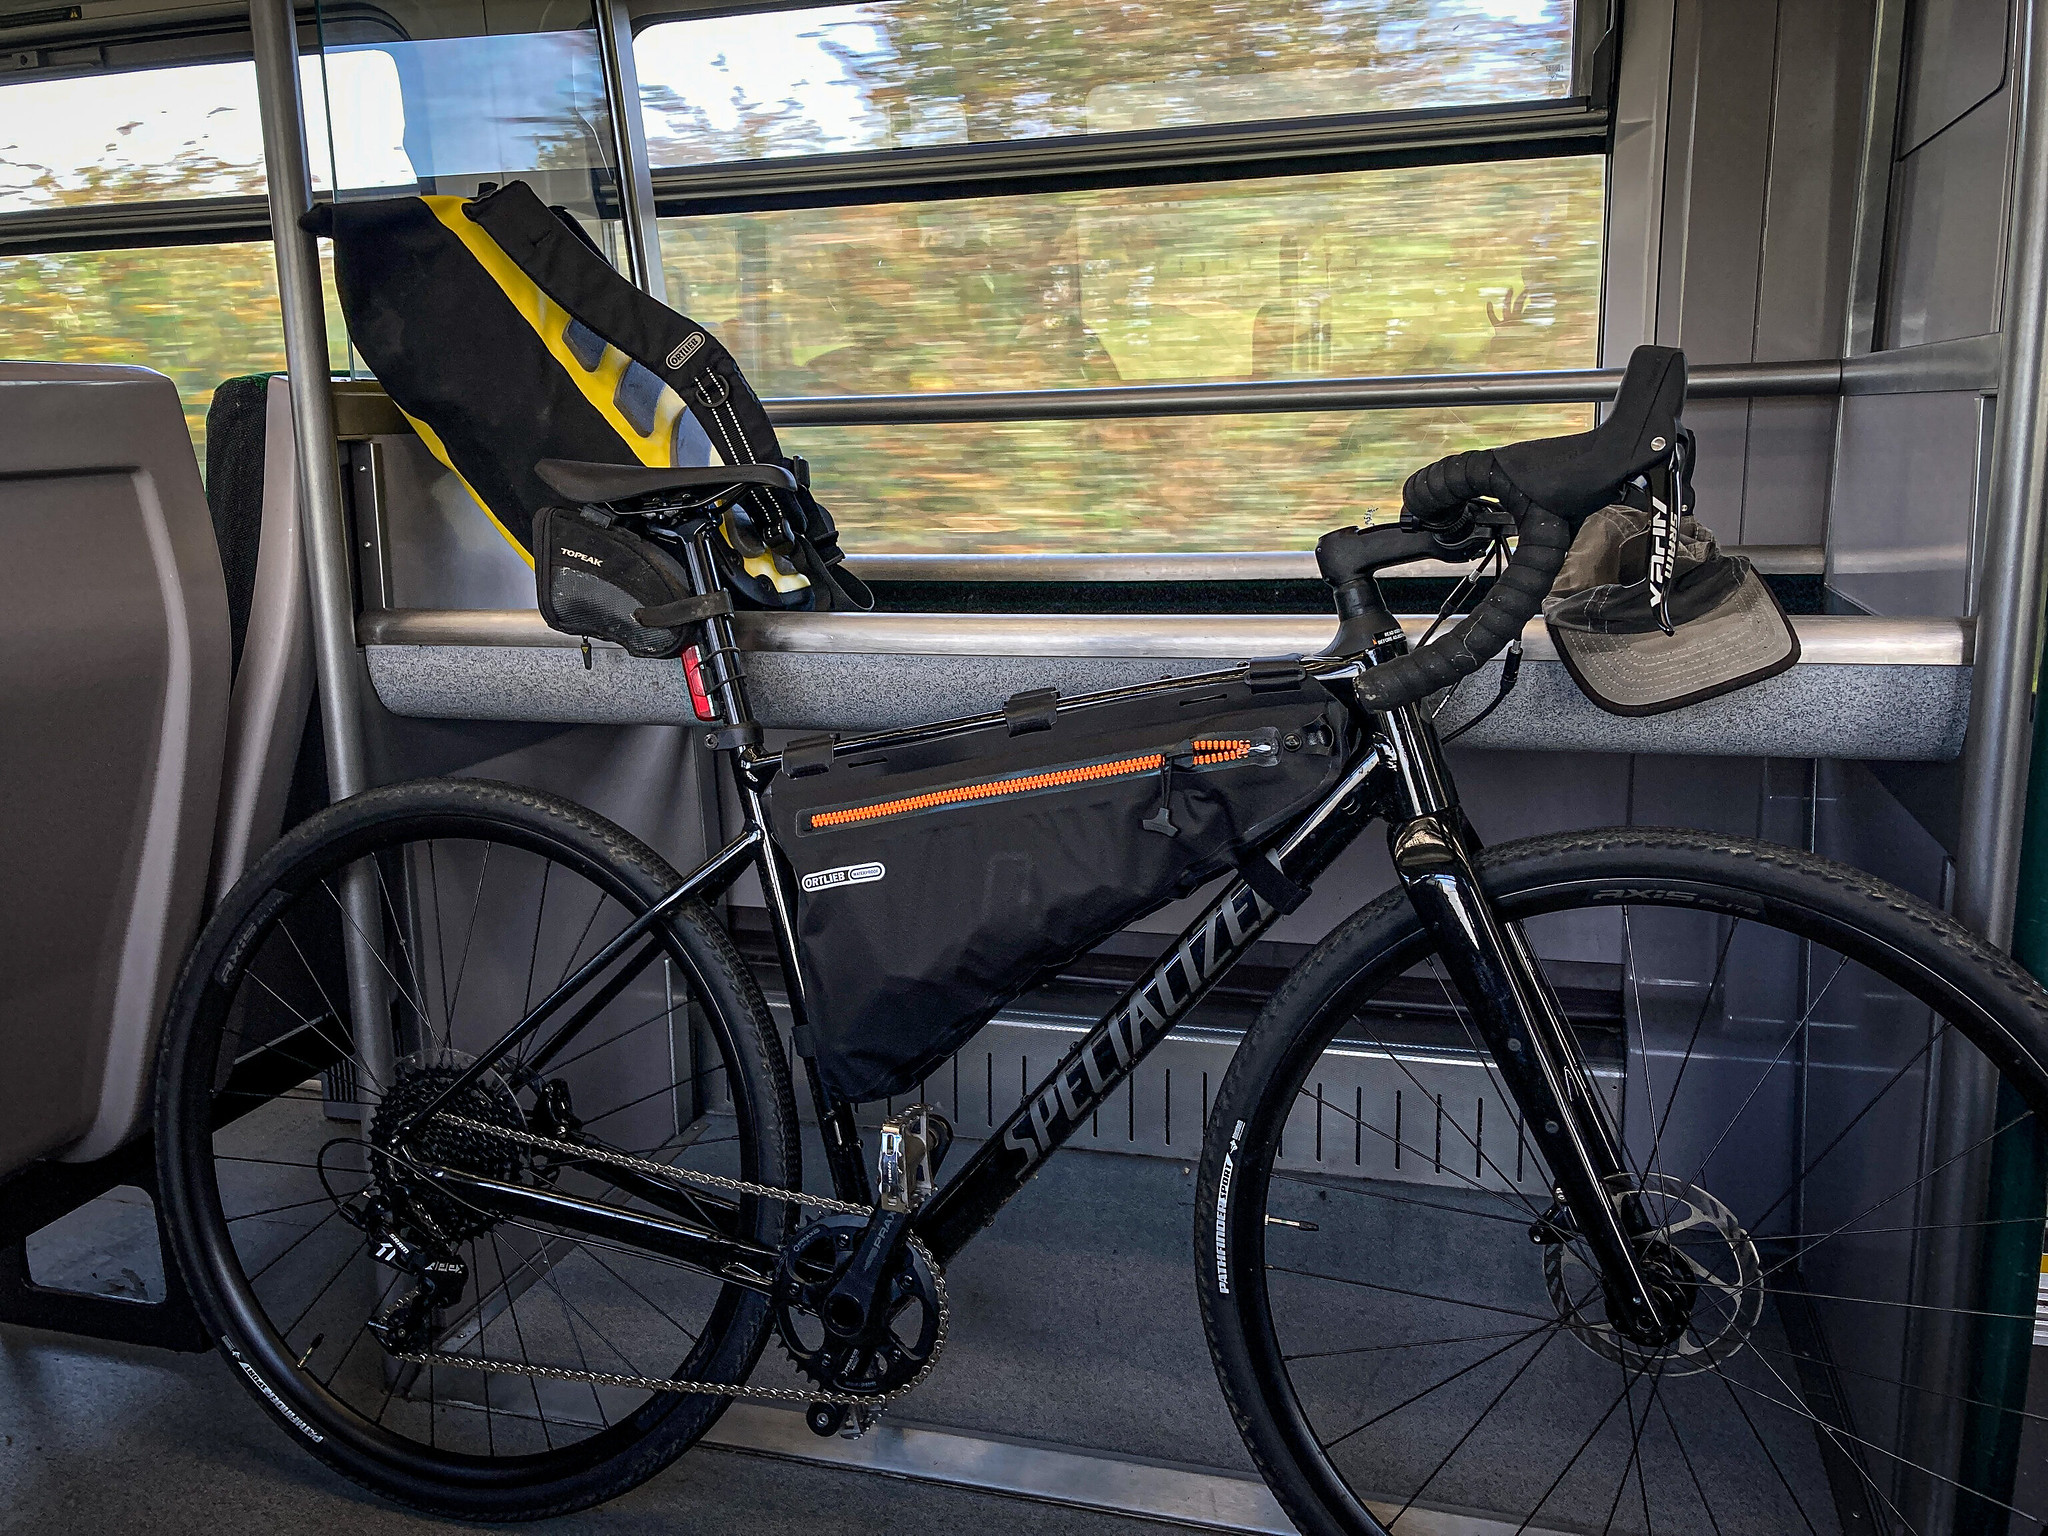 Bike on a train